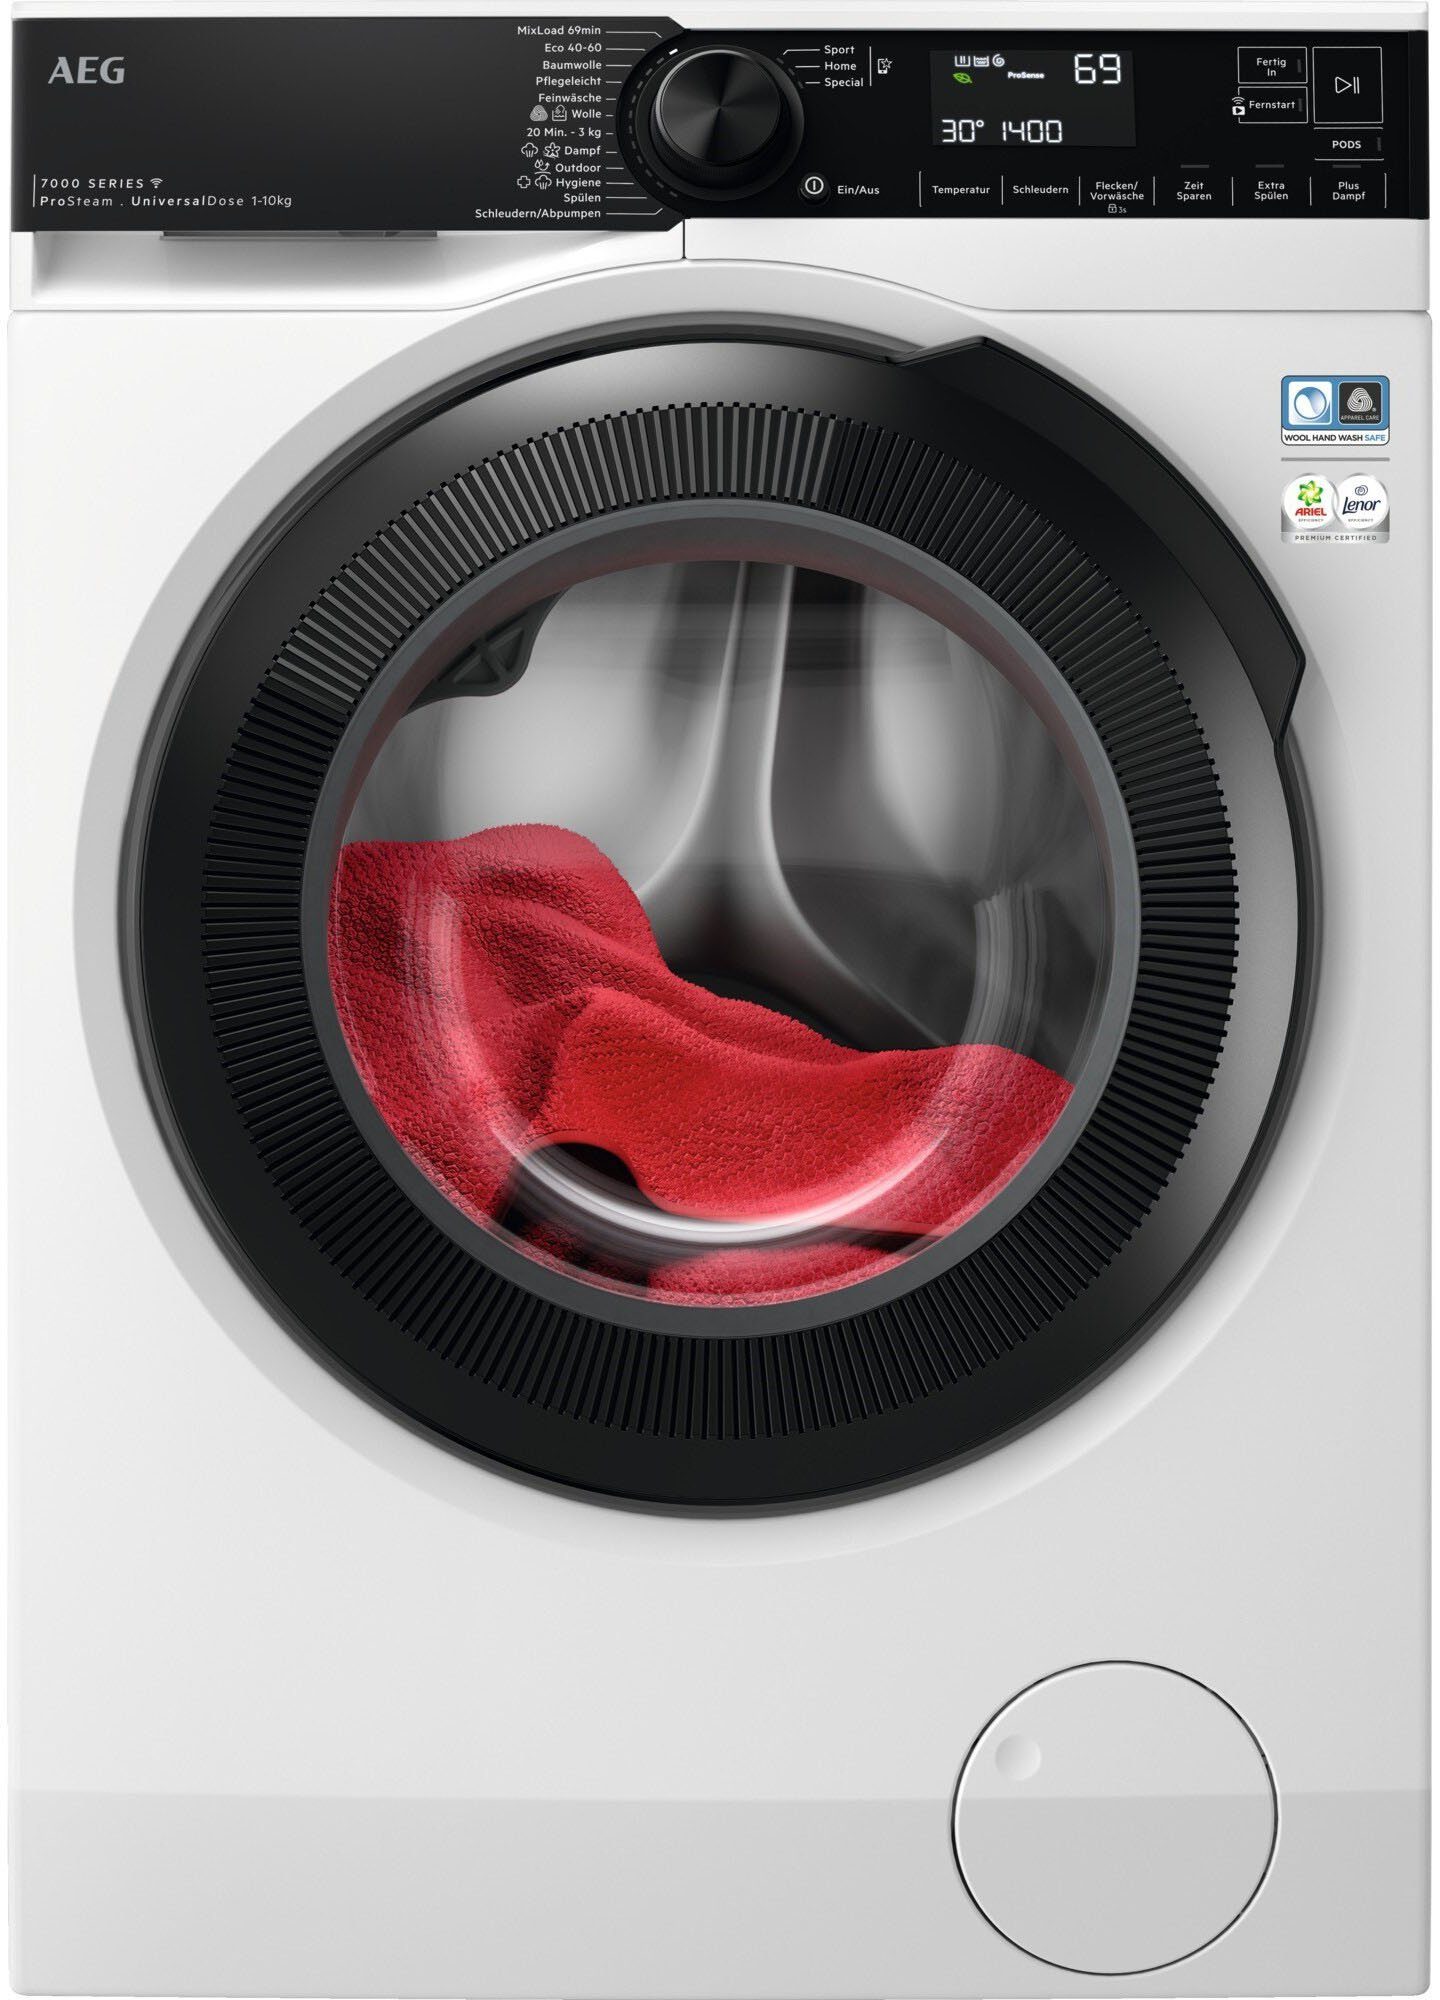 [100% Qualitätsgarantie] AEG Waschmaschine LR7E75400, 10 kg, 96 ProSteam für Wasserverbrauch % - & Wifi 1400 Dampf-Programm weniger U/min